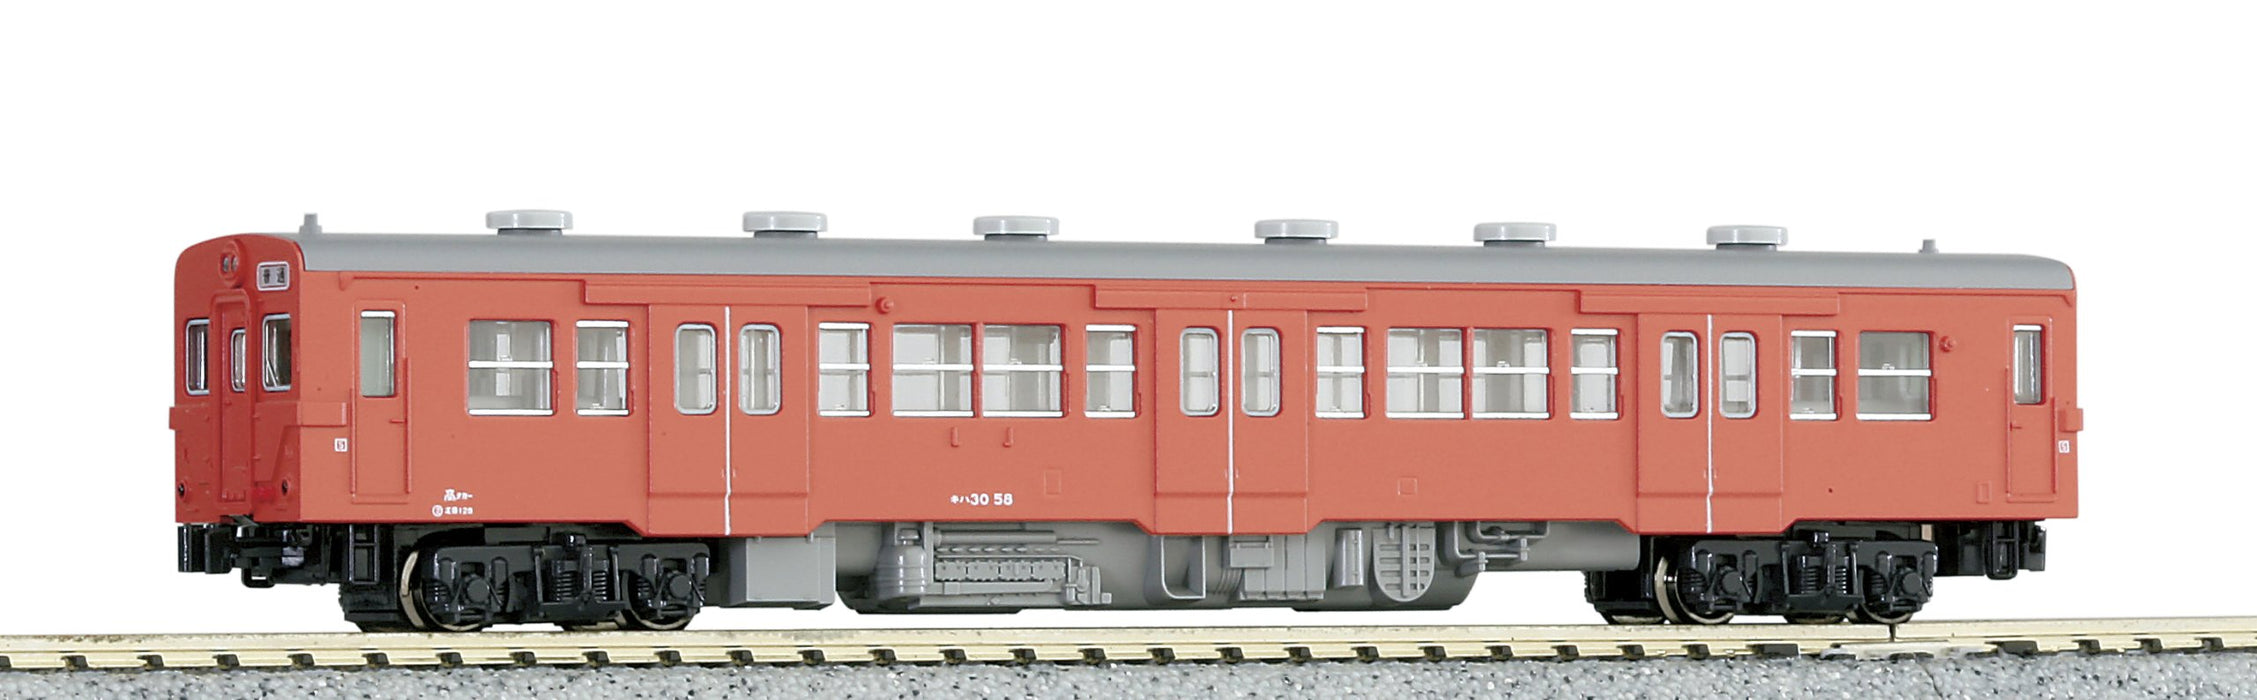 Kato Kiha30 Railway Model Diesel Car in Metropolitan Area Color N Gauge 6073-2